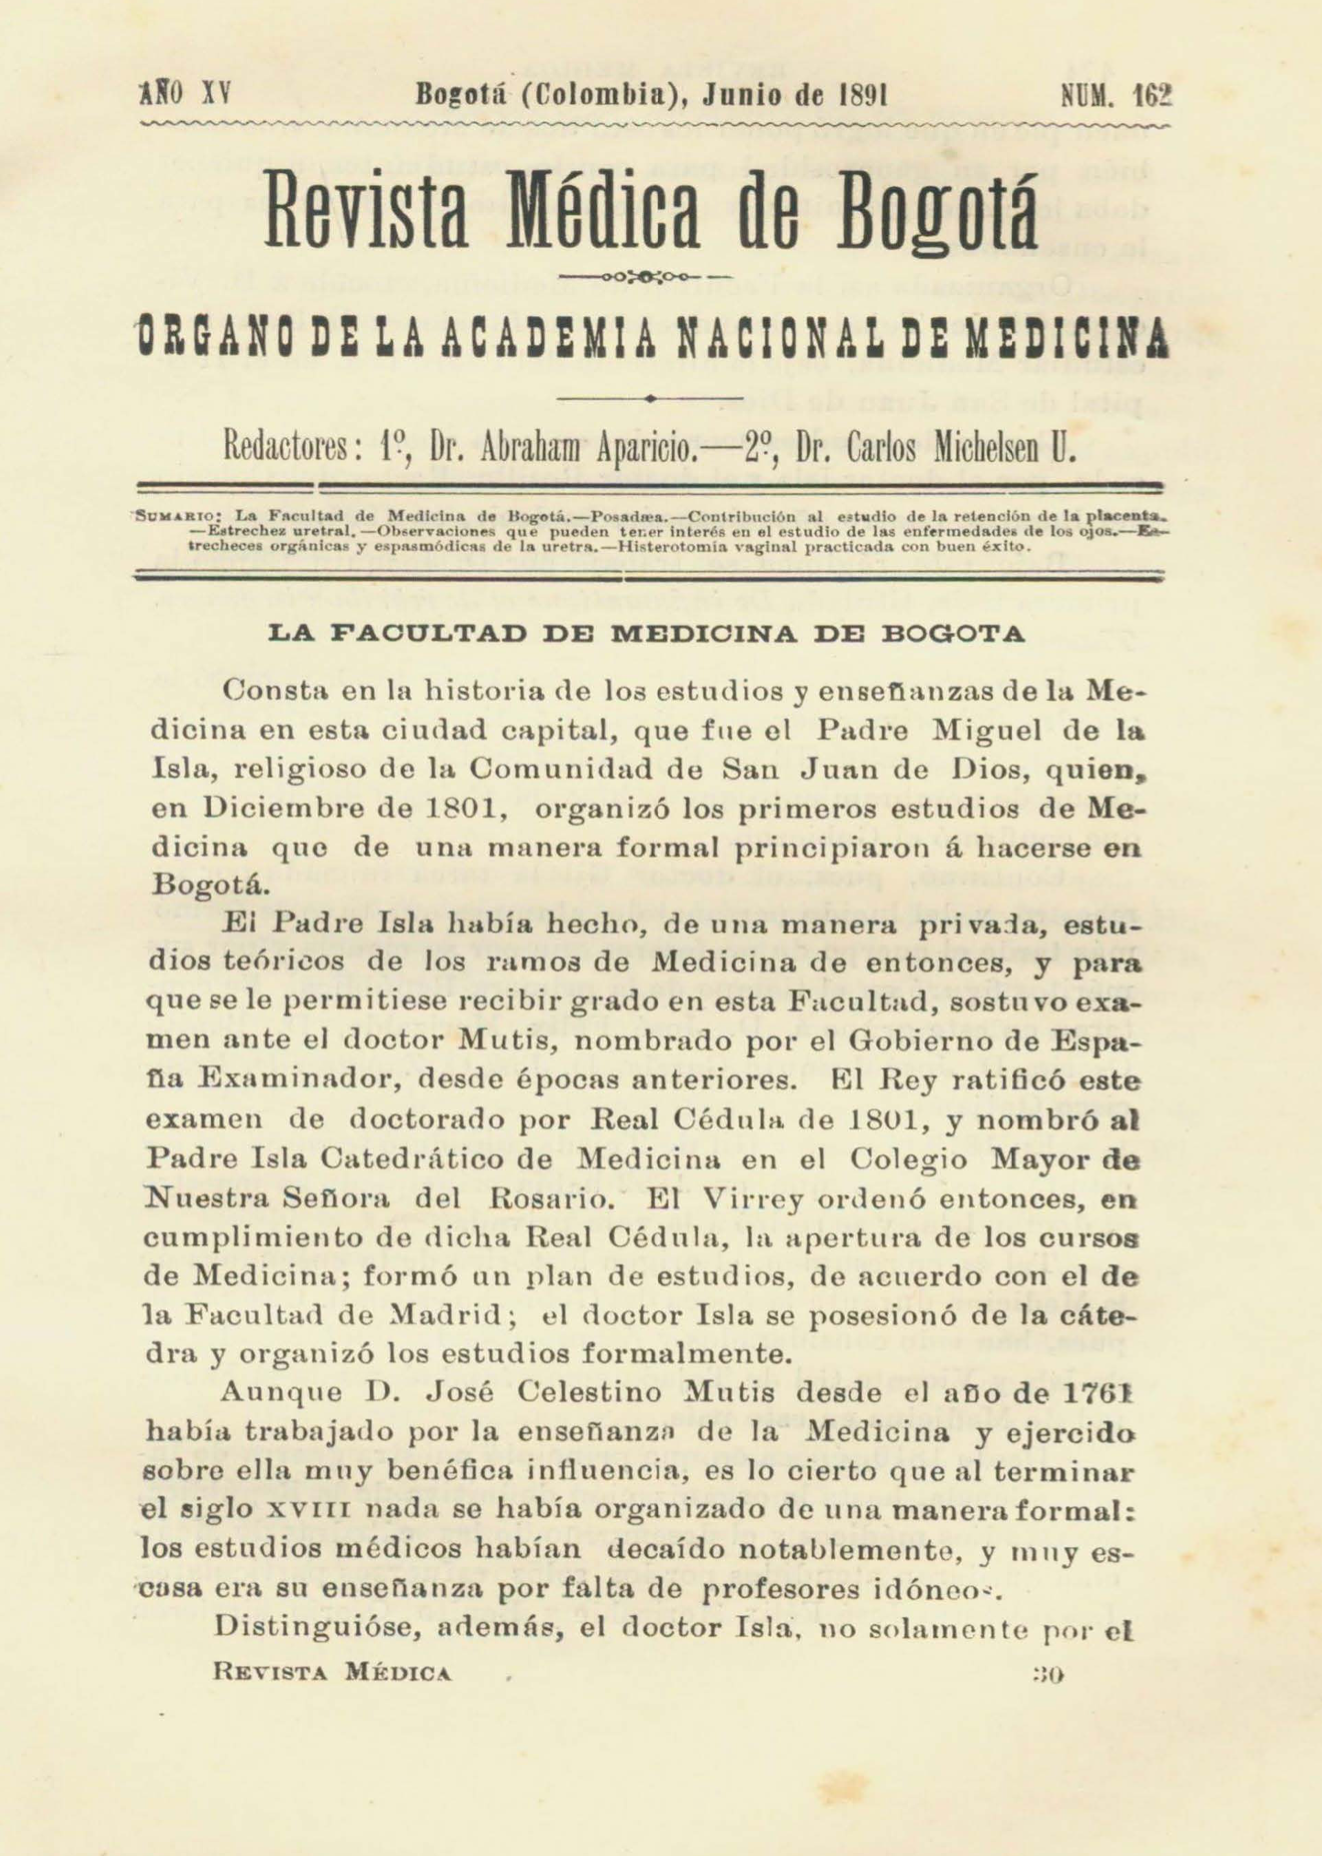 					Ver Vol. 15 Núm. 162 (1891): Revista Médica de Bogotá. Serie 15. Junio de 1891. Núm. 162
				